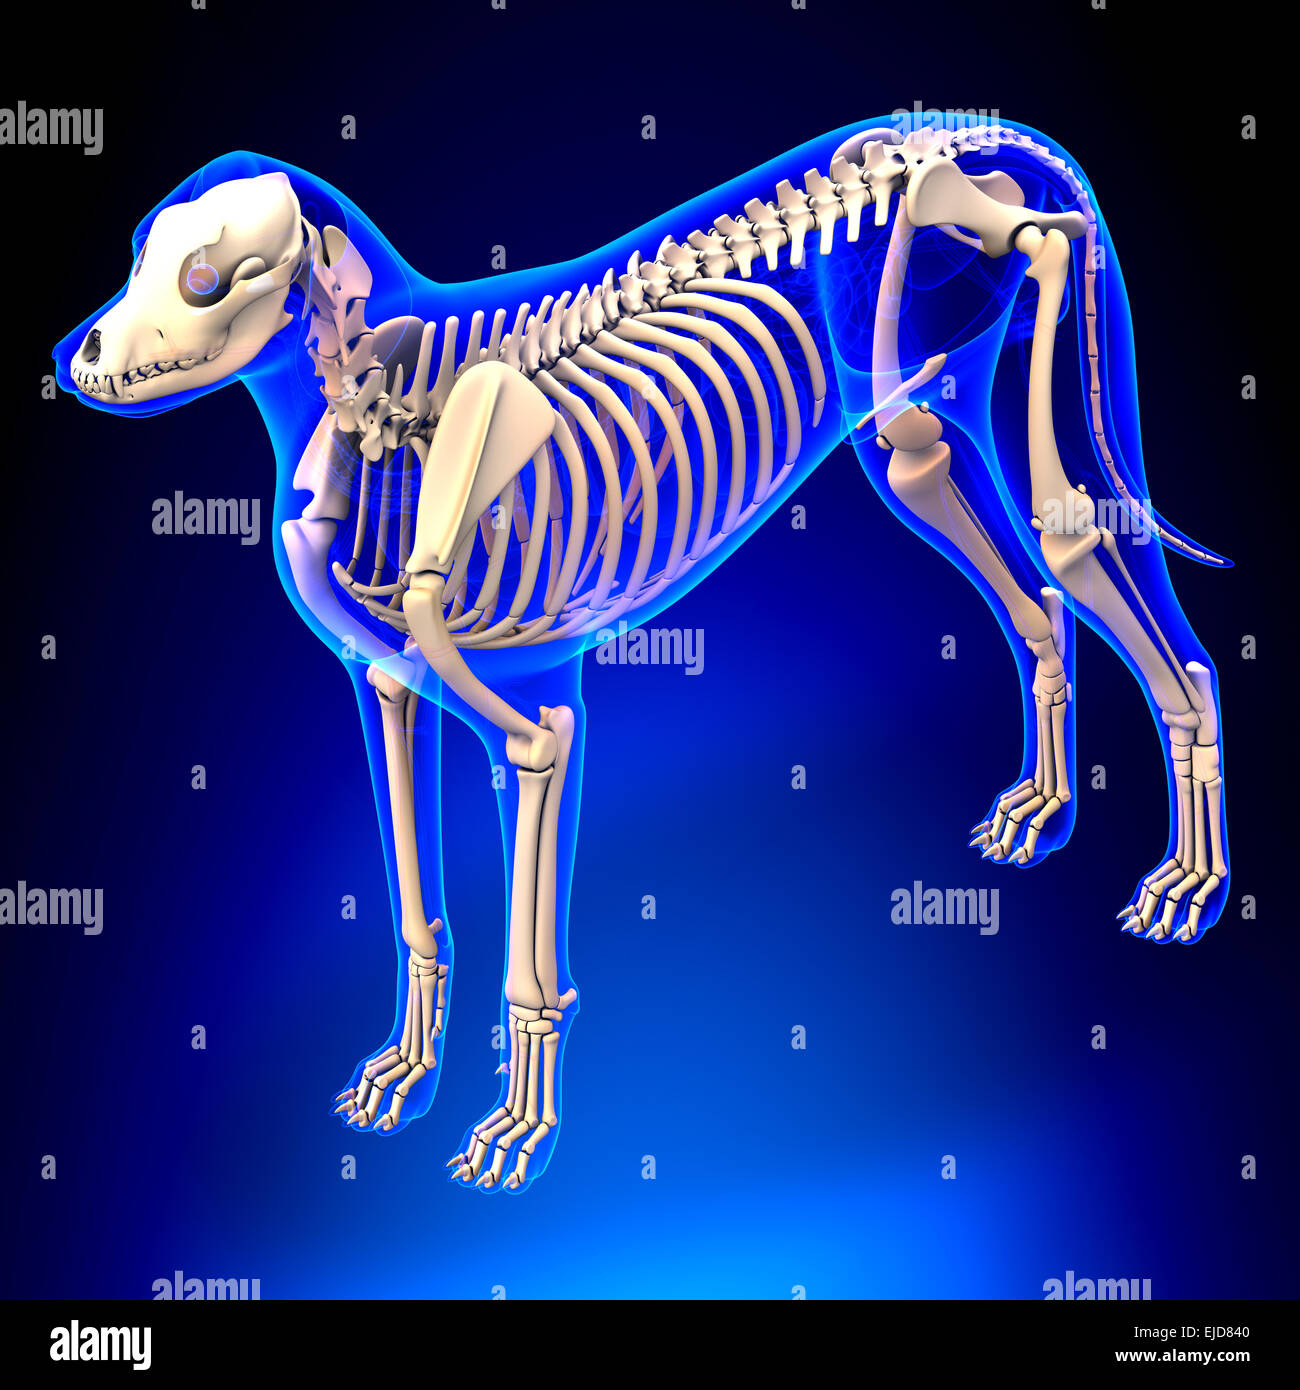 Squelette de chien - Canis lupus familiaris Anatomie - Vue en perspective Banque D'Images